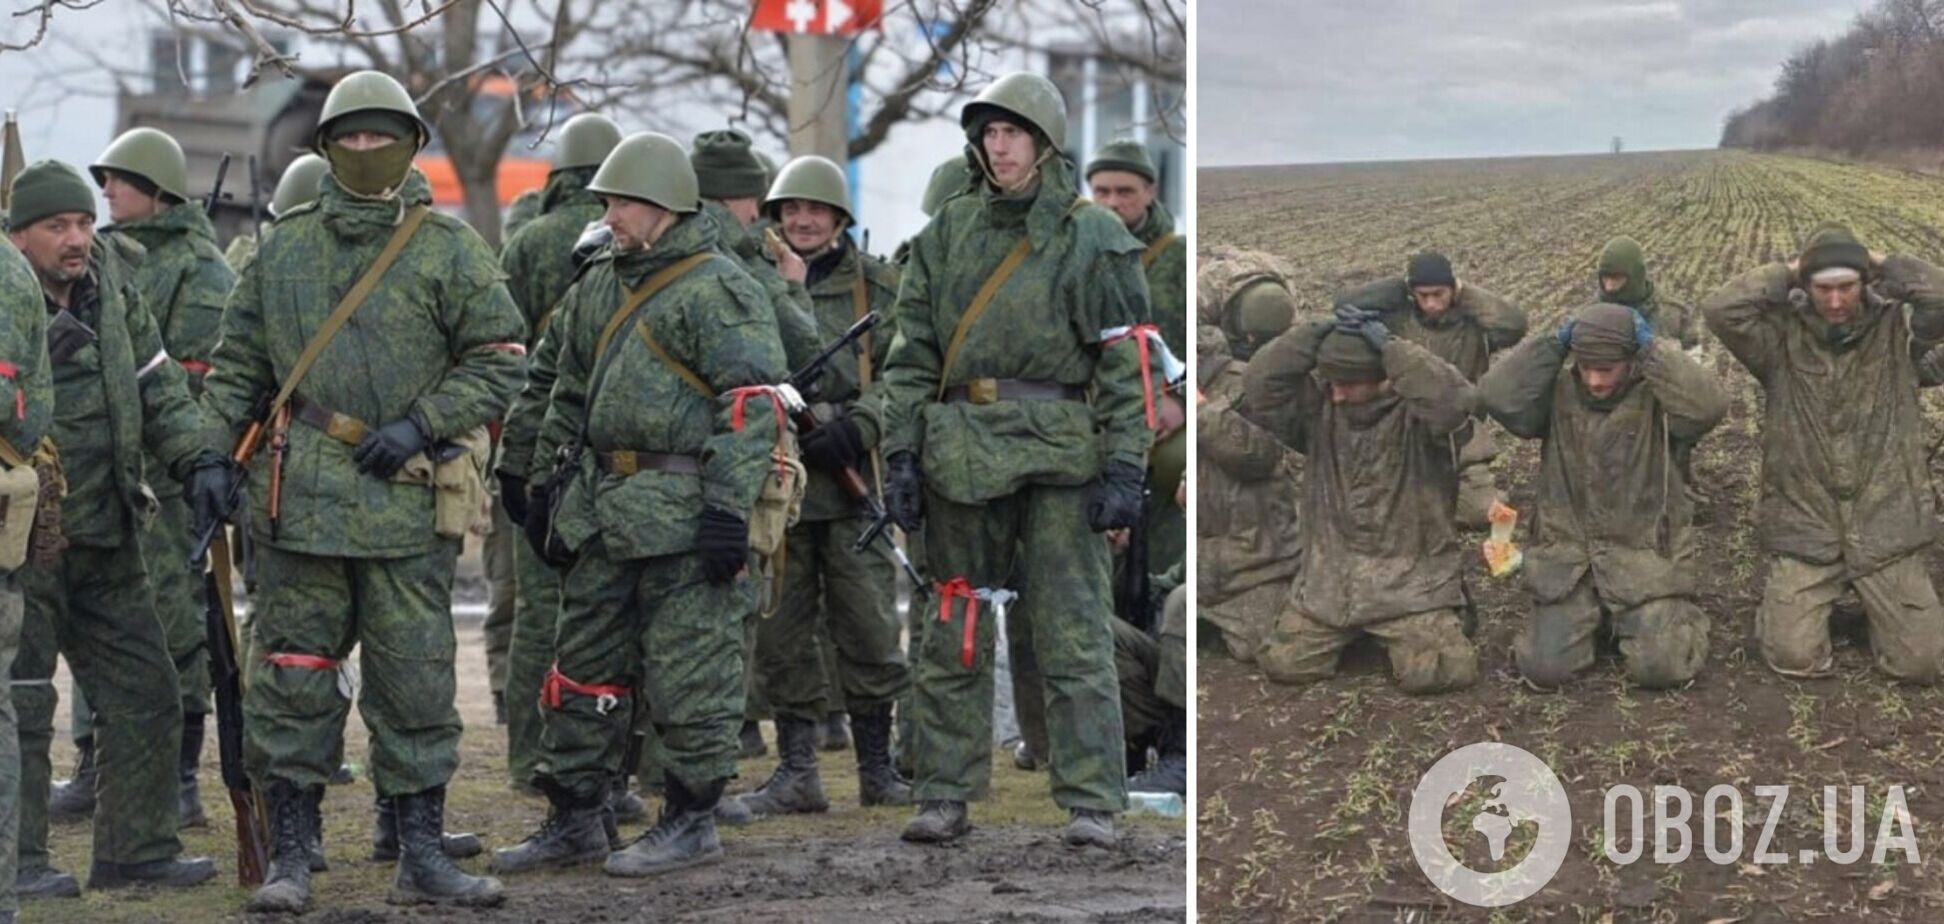 58 российских контрактников отказались воевать в Украине после общения с 'товарищами', уже узнавшими 'теплый прием' украинцев, – журналист